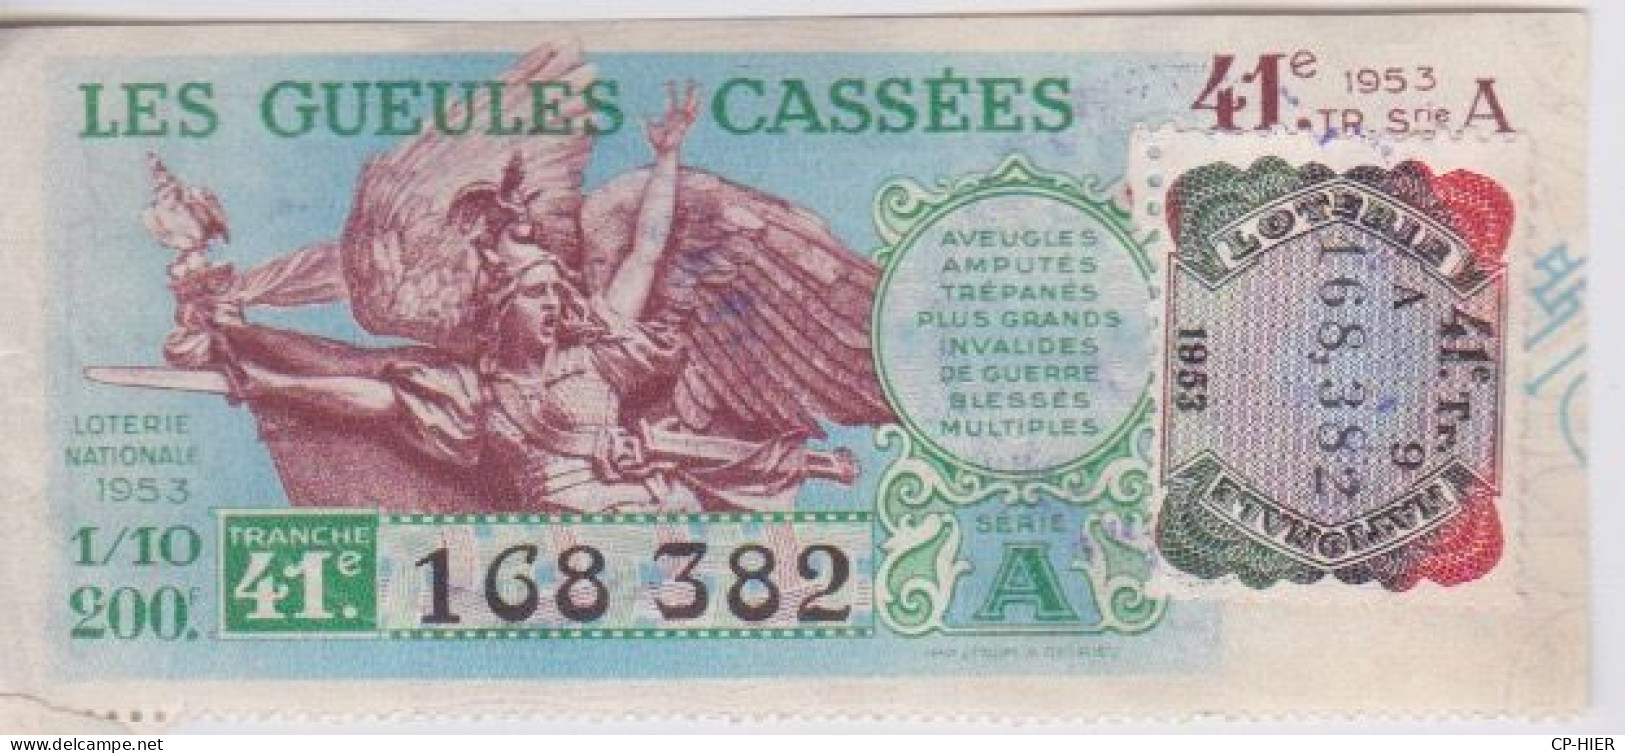 BILLET DE LOTERIE NATIONALE - LES GUEULES CASSEES - + VIGNETTE  1953 + CACHET AU DOS - Billets De Loterie